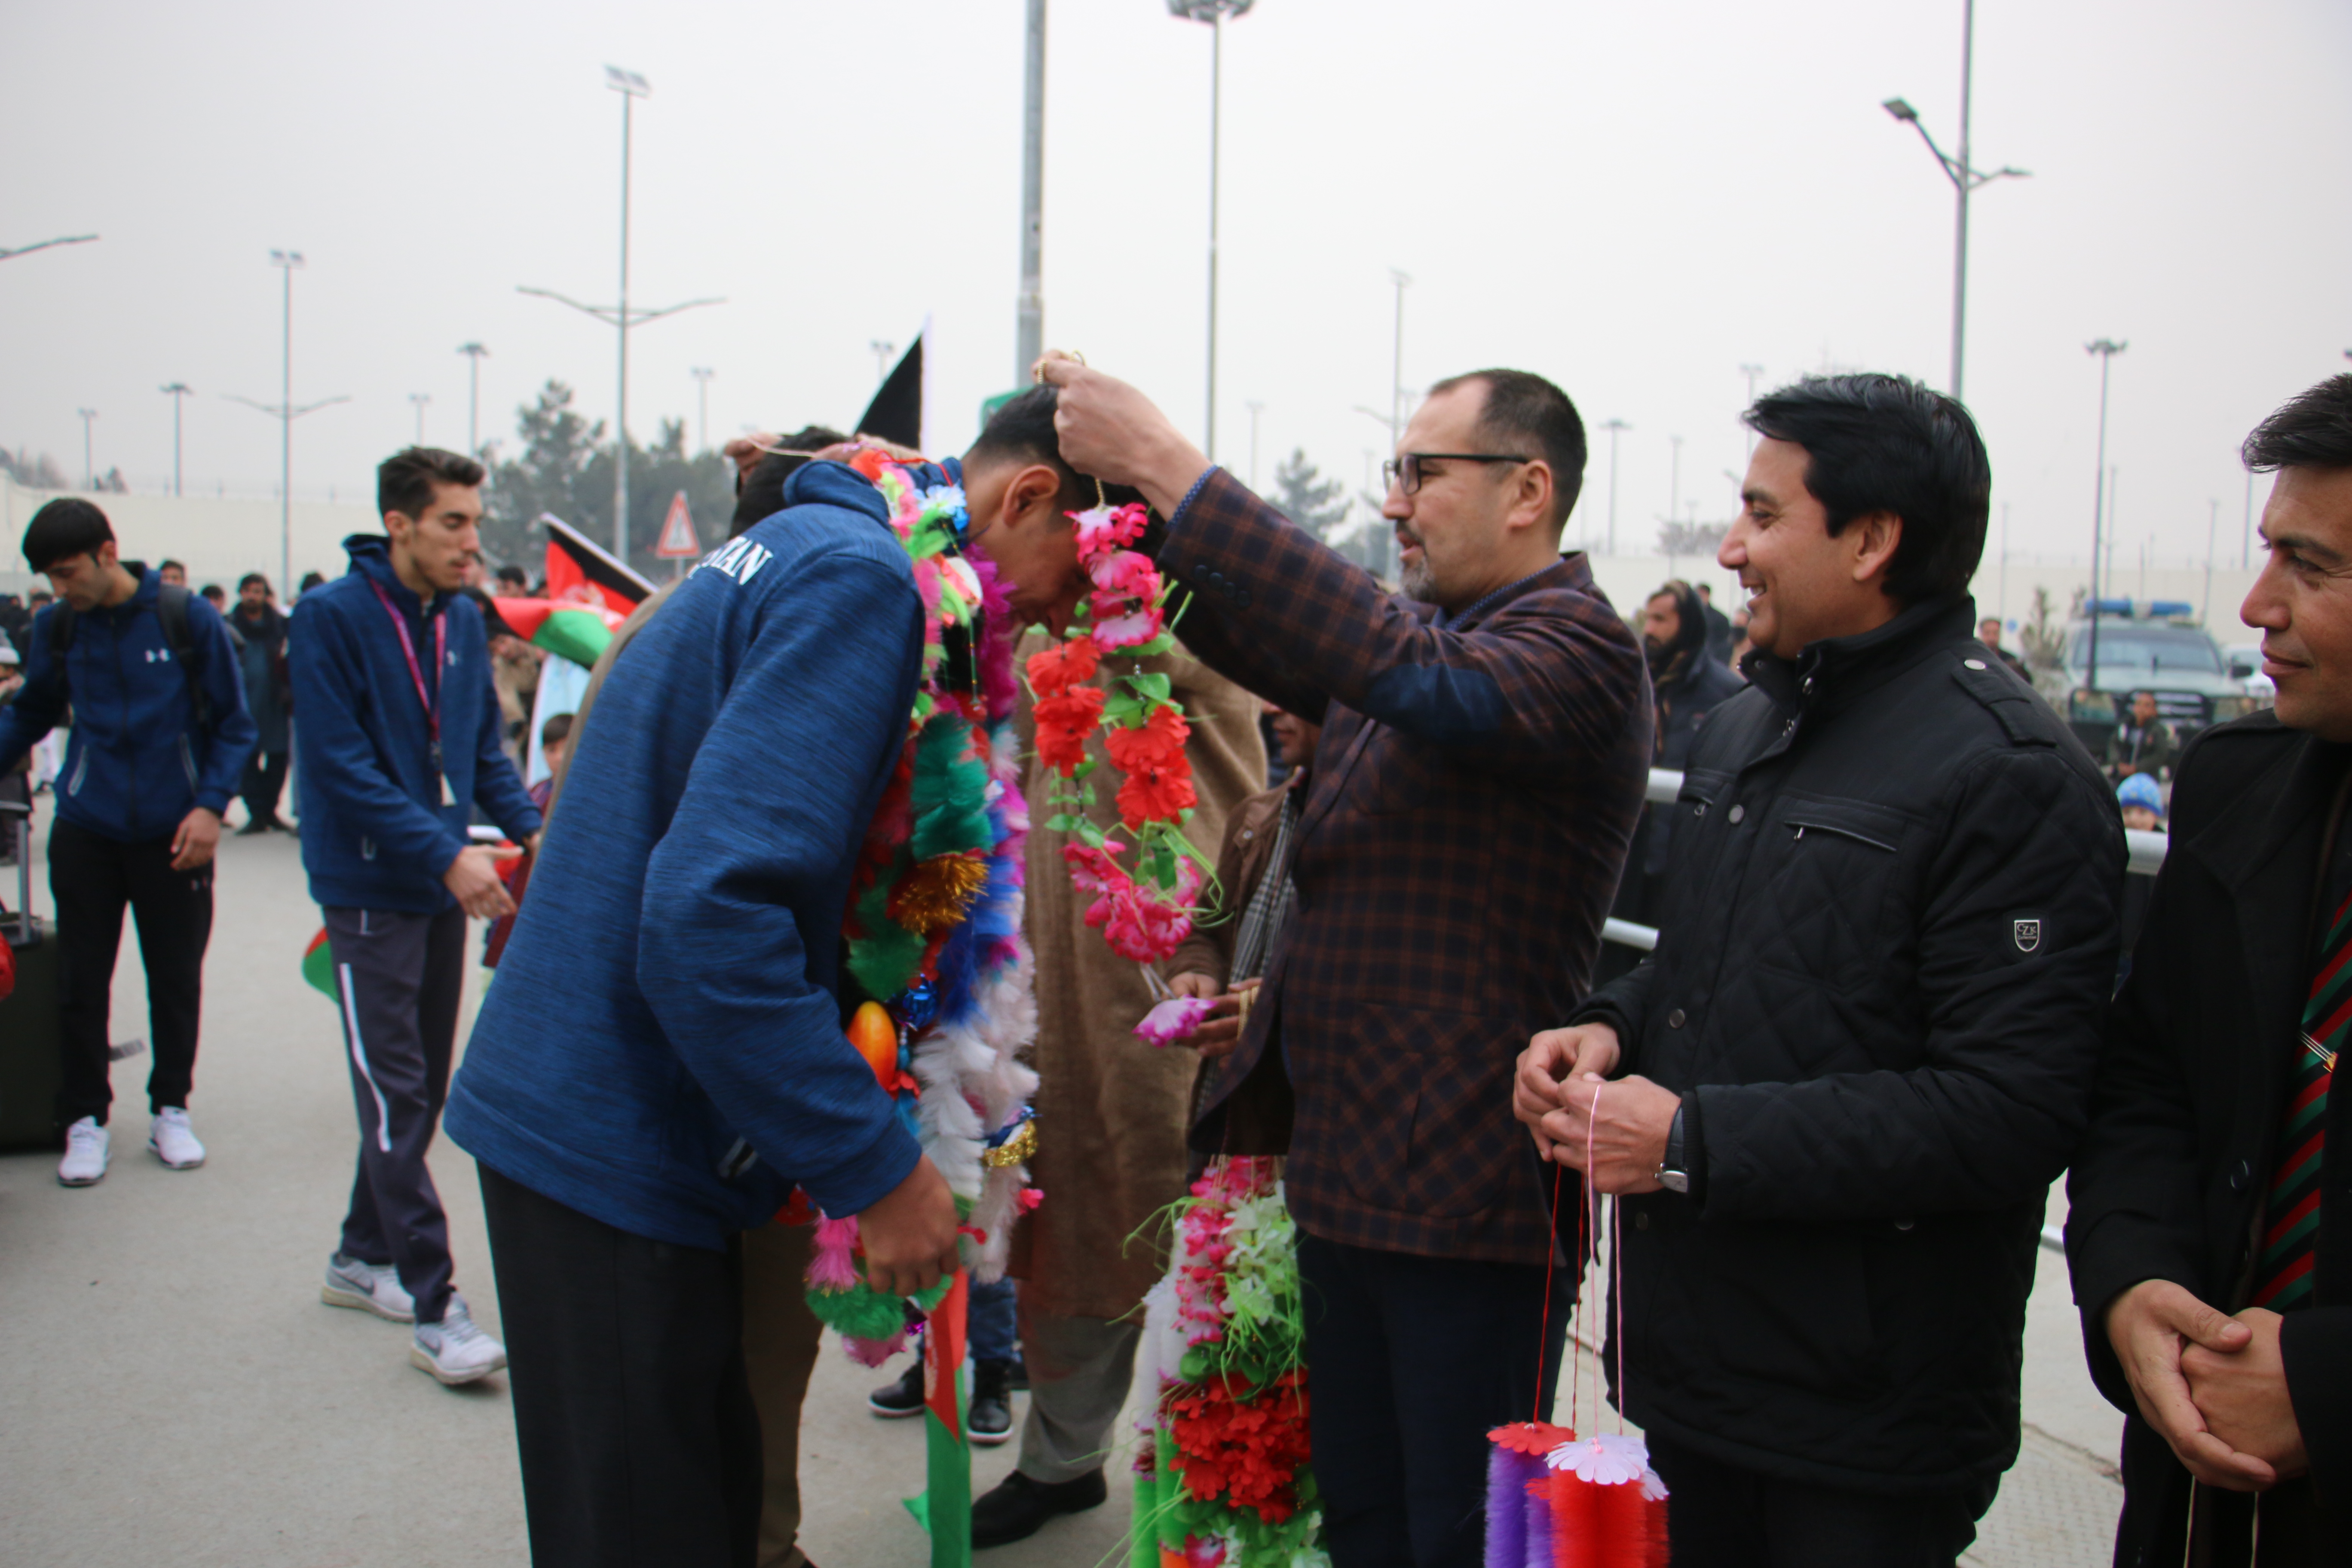 مدال آوران تکواندو کشور پس از ورود به فرود گاه کابل از سوی رهبری اداره ورزش کشور و ورزشکاران مورد استقبال قرار گرفتند .